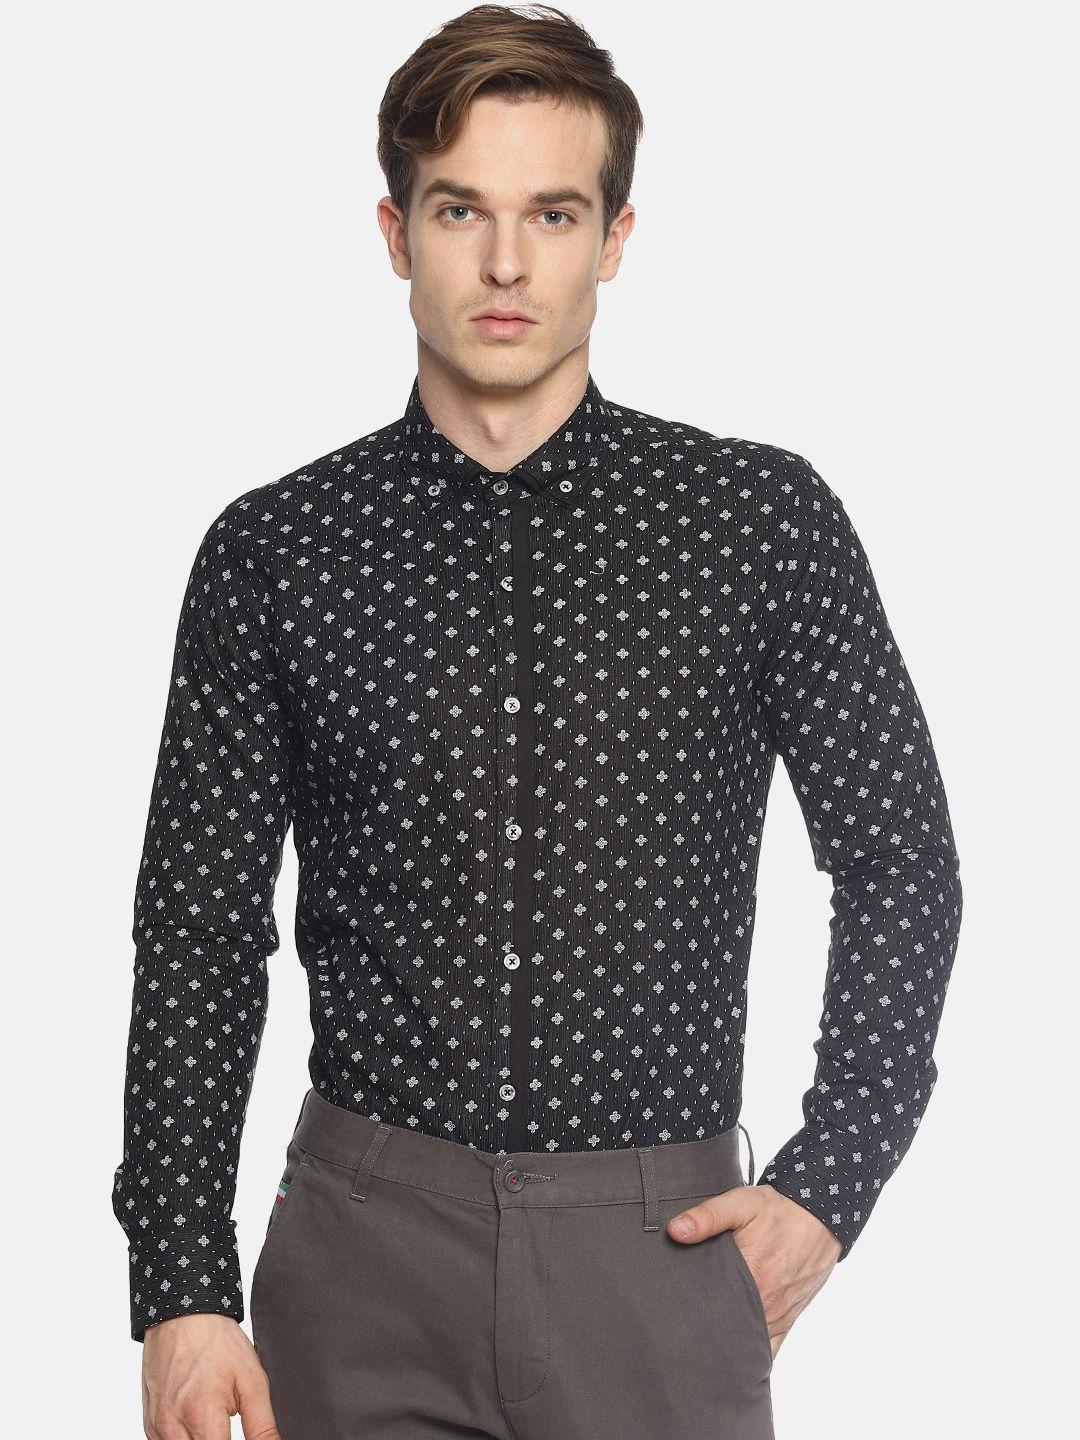 couper & coll men black premium slim fit floral printed casual shirt